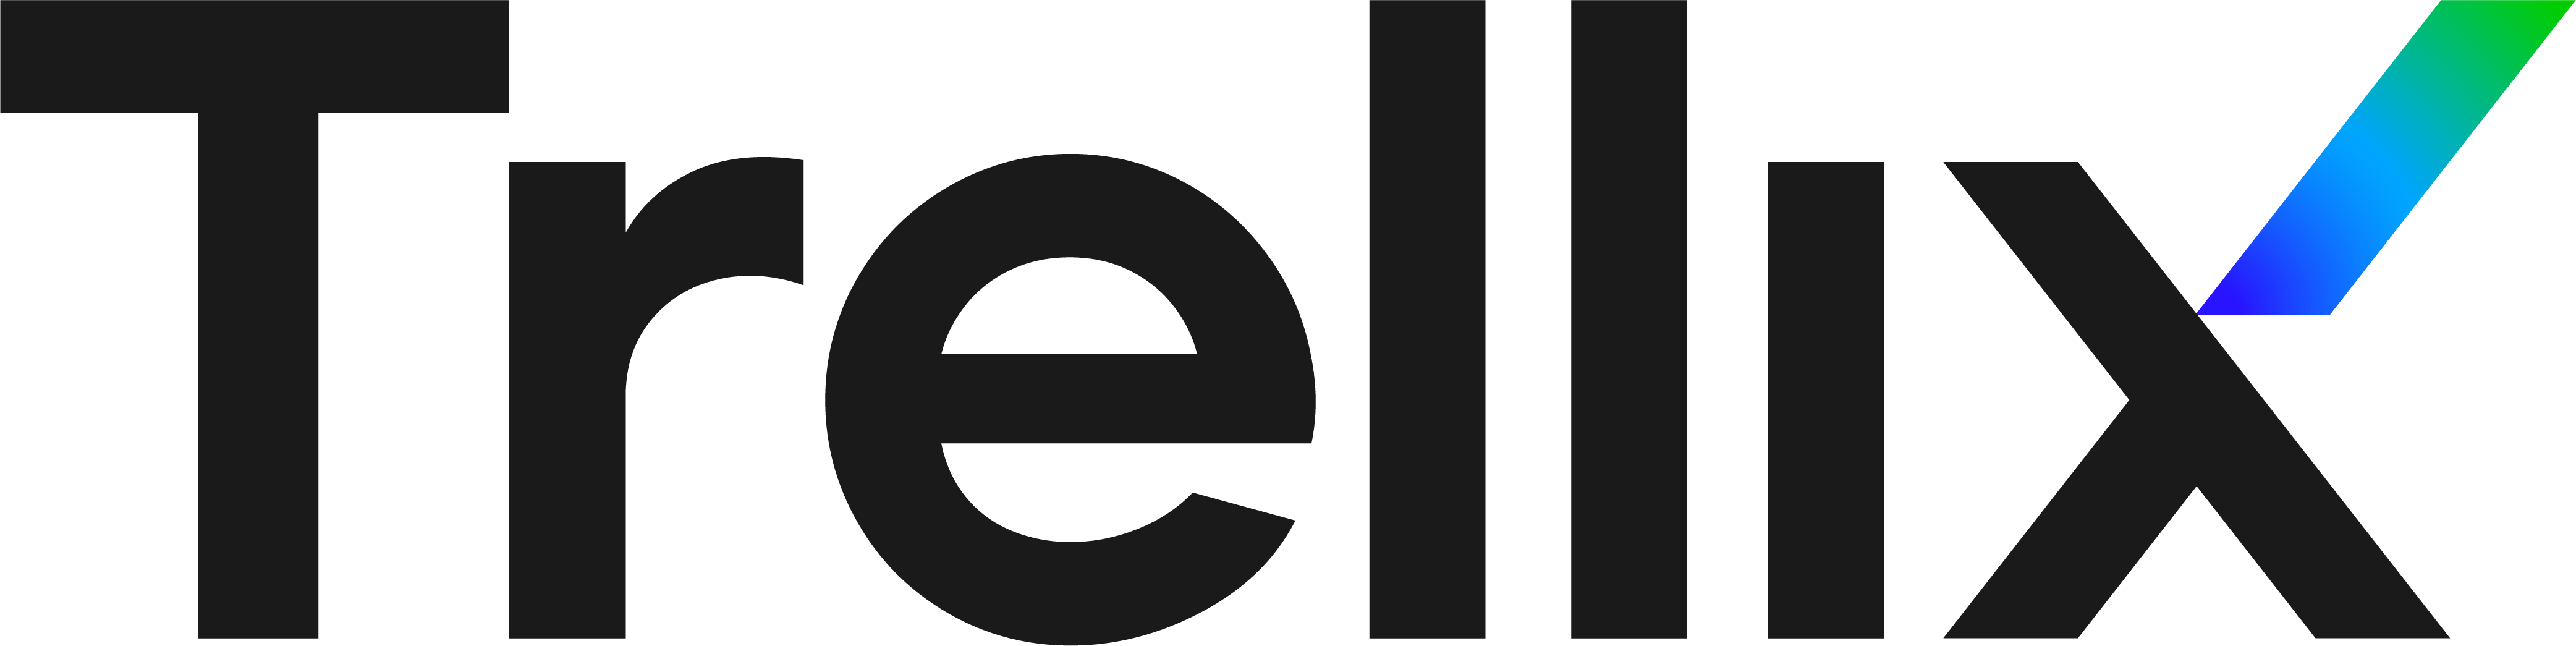 trellix-logo